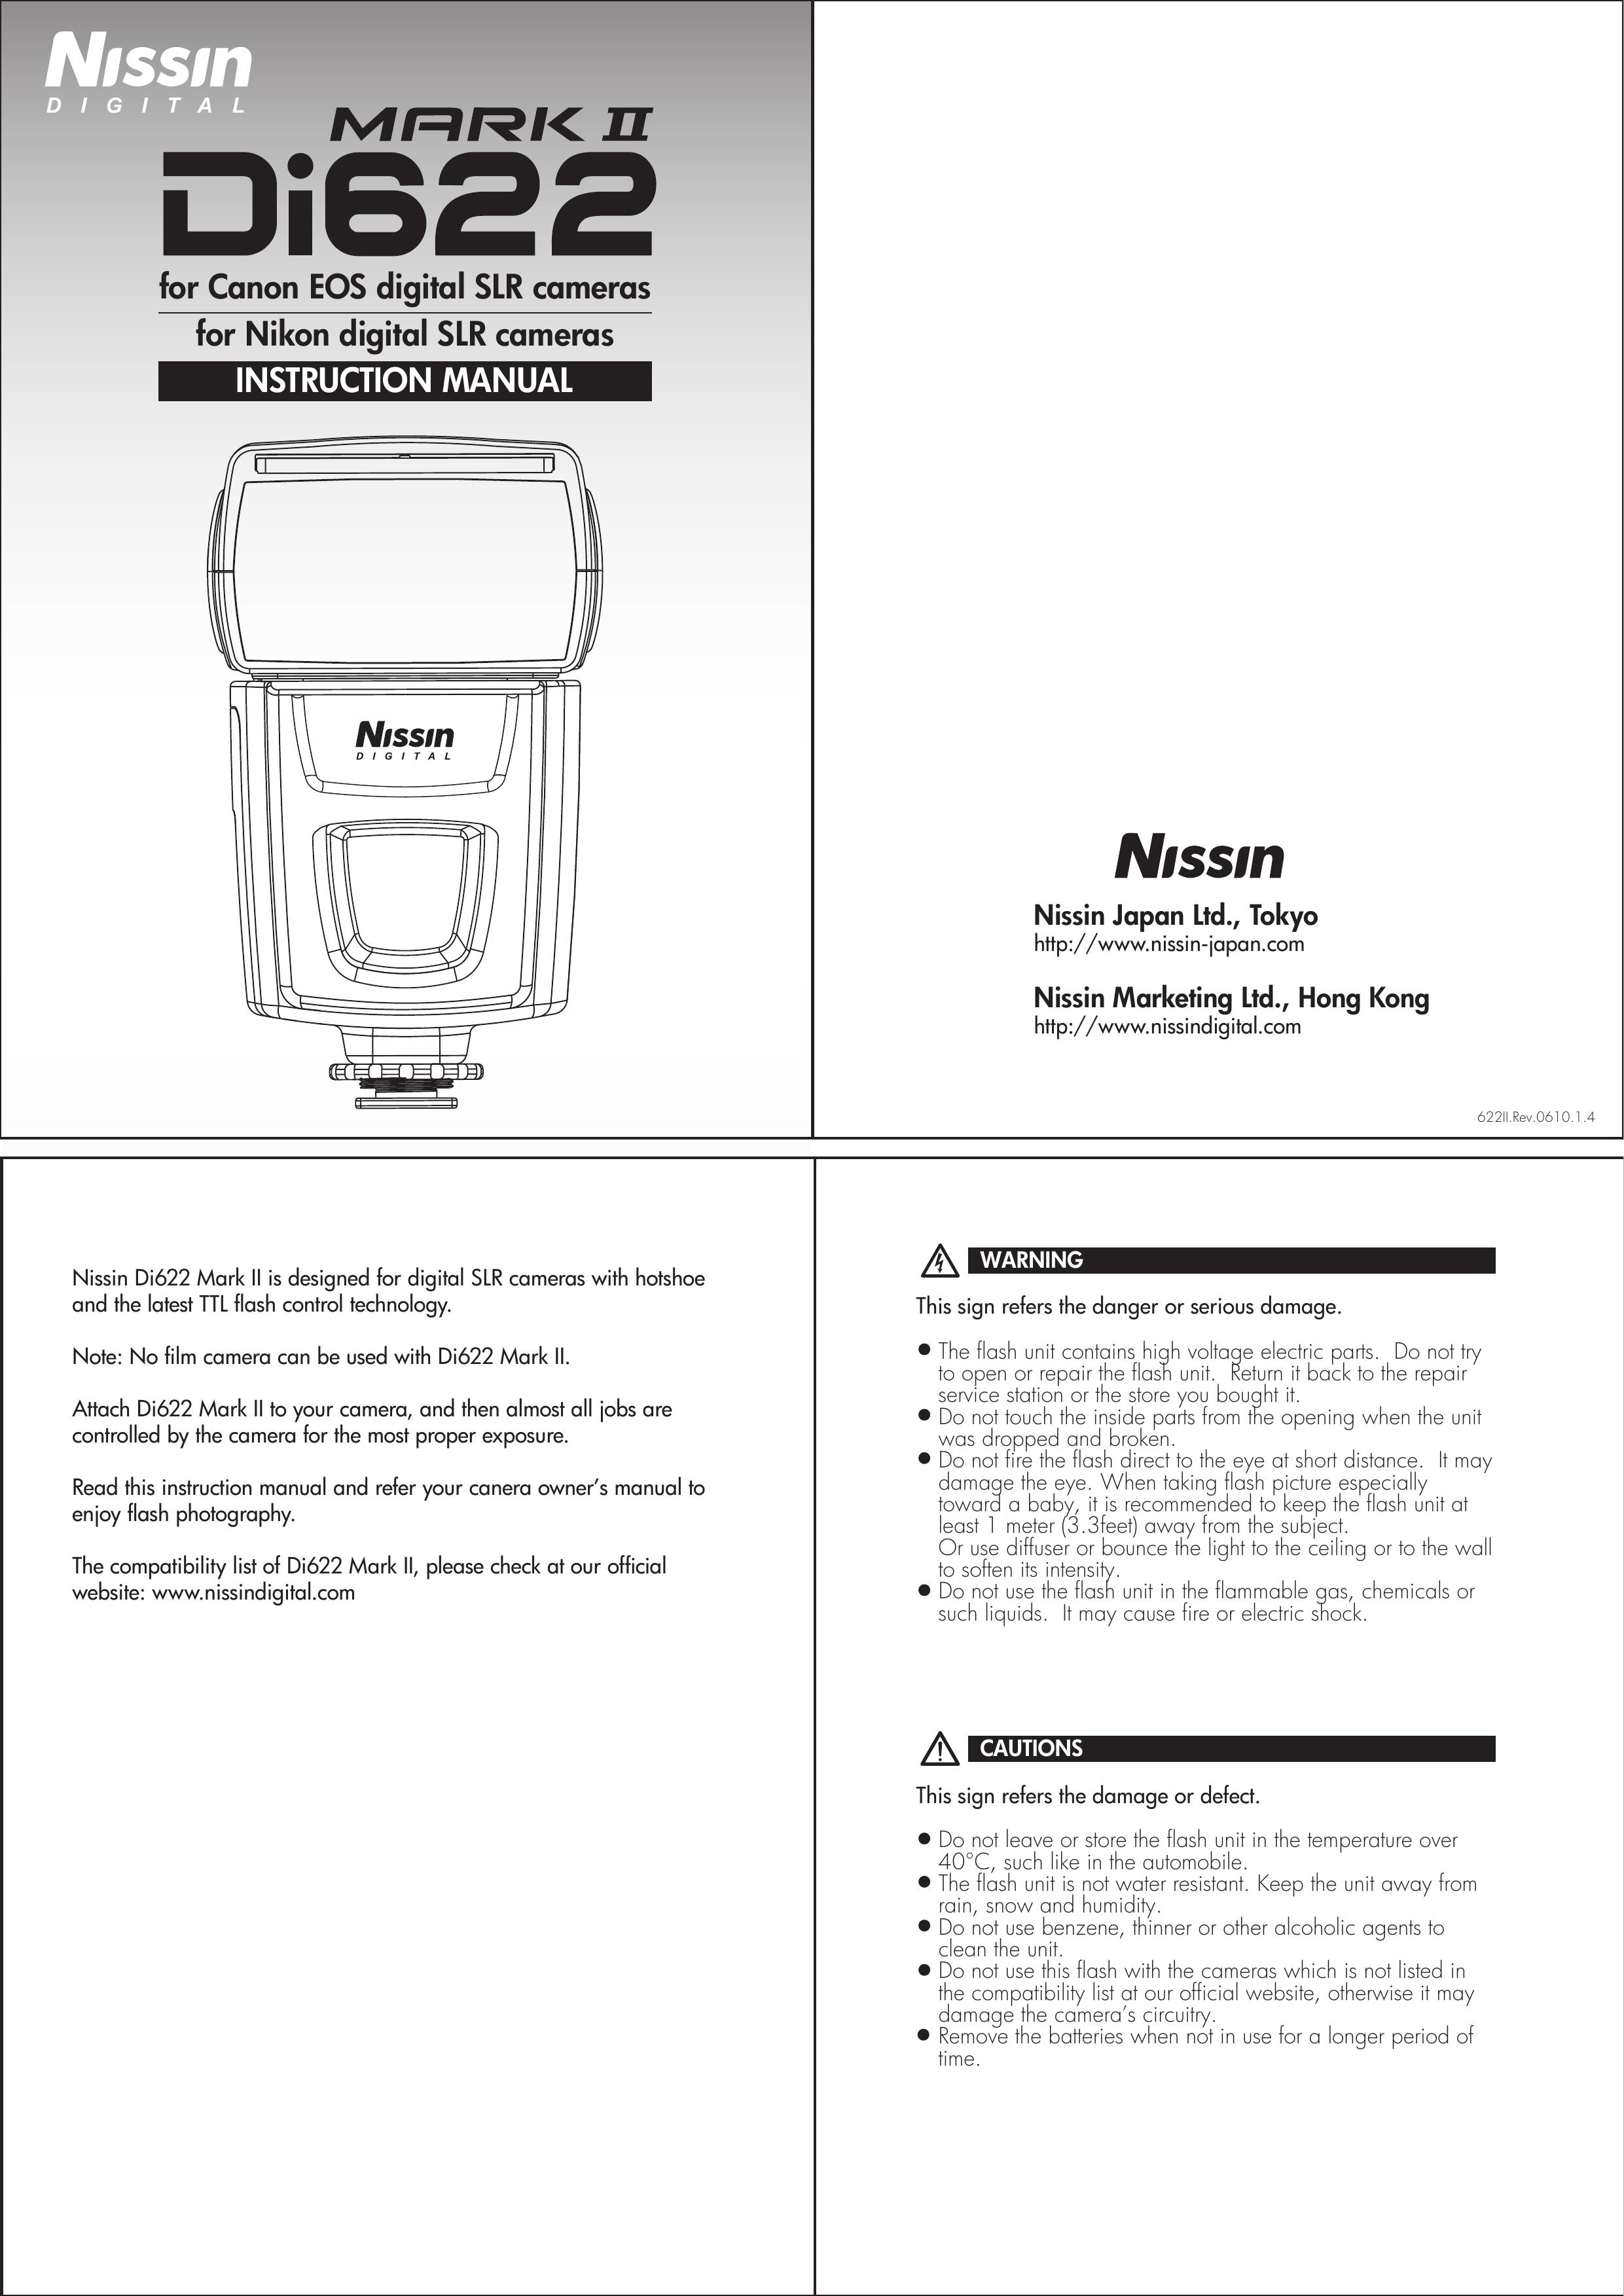 Nissin DI622 Camera Flash User Manual